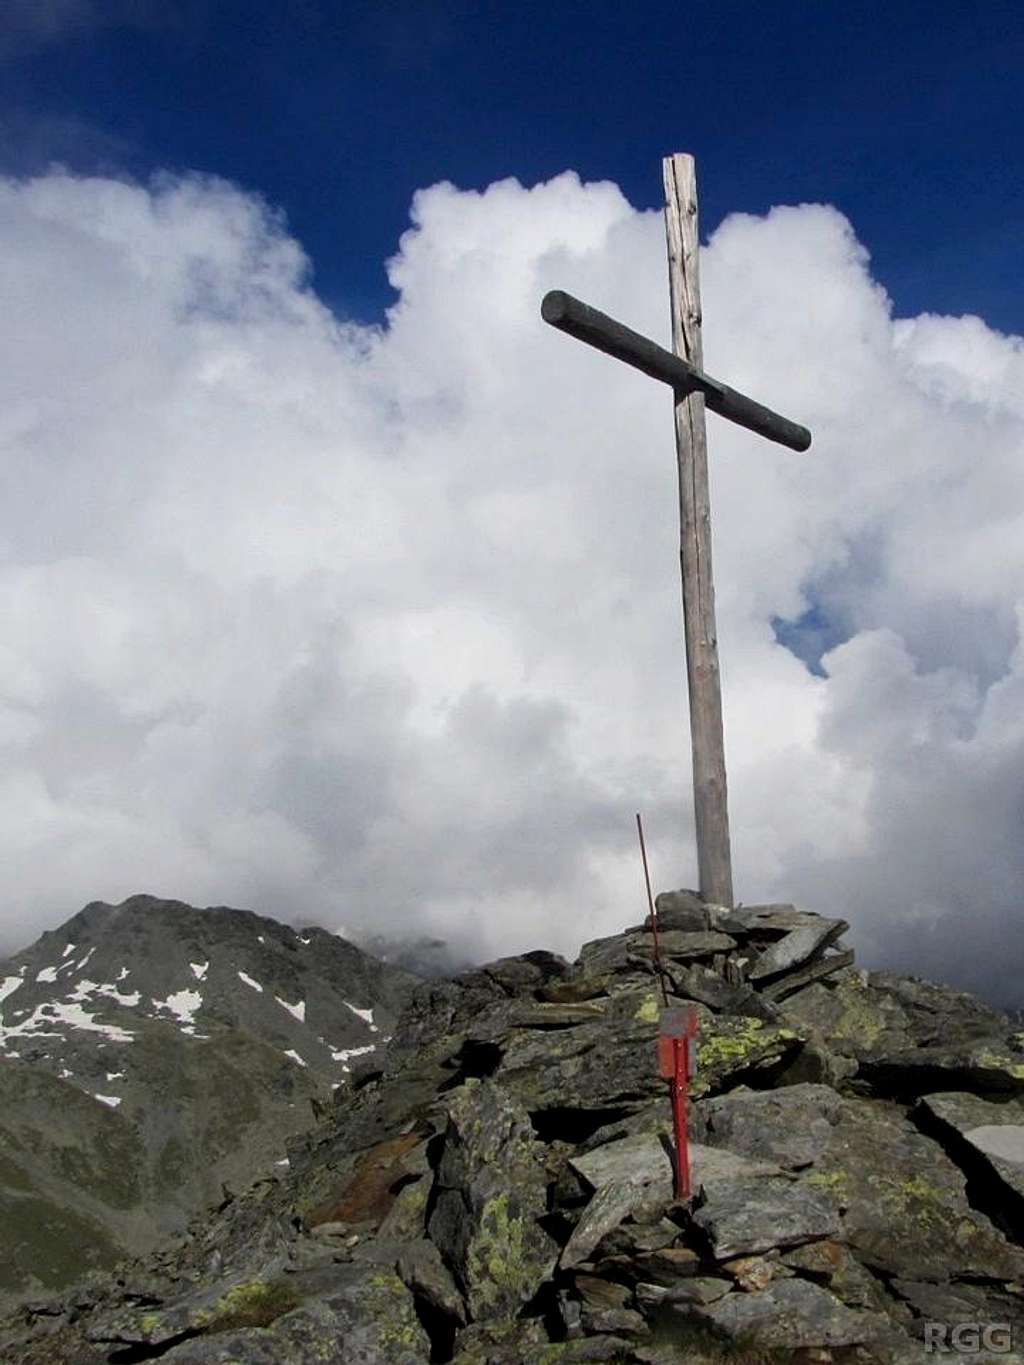 A simple wooden cross marks the summit of Stutennock